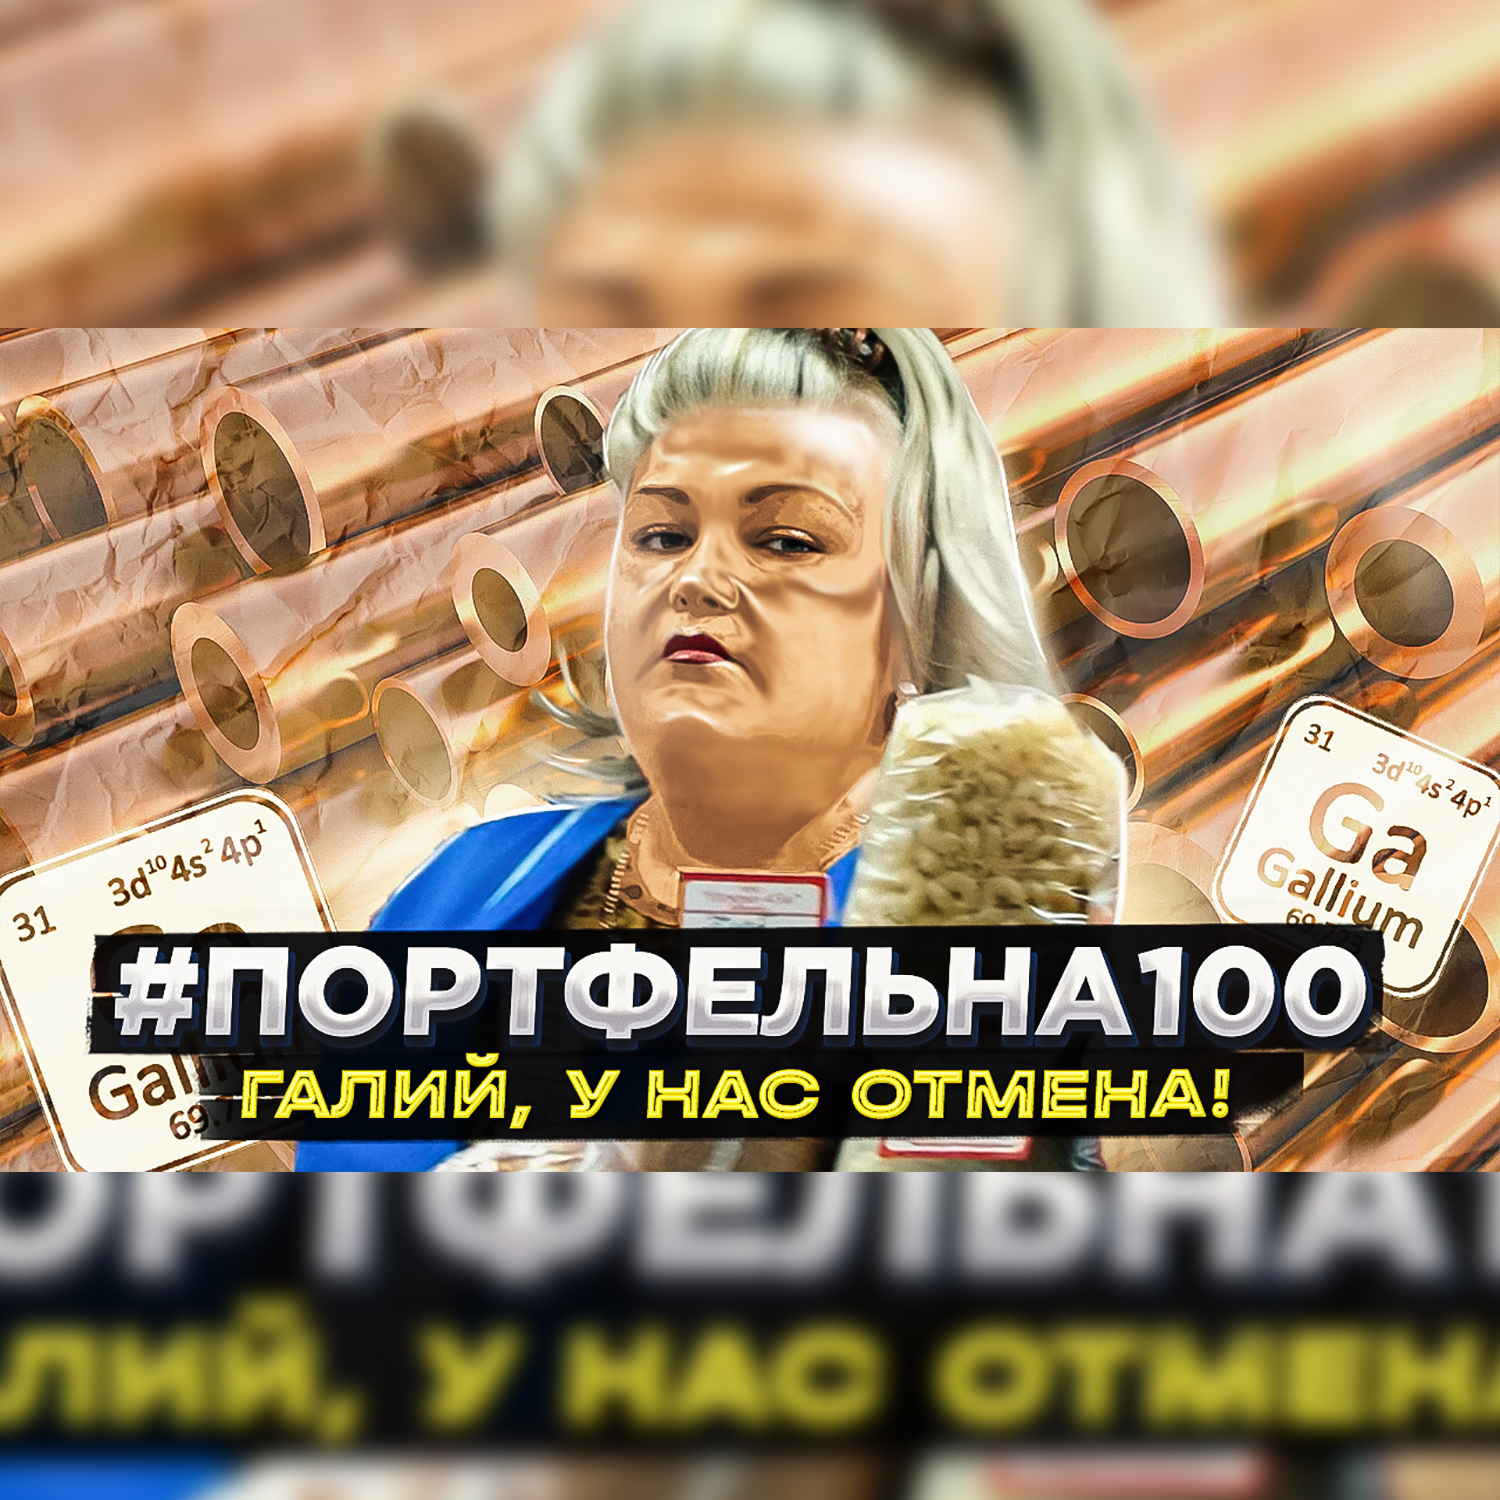 Галий, у нас отмена! #Портфельна100 podcast poster